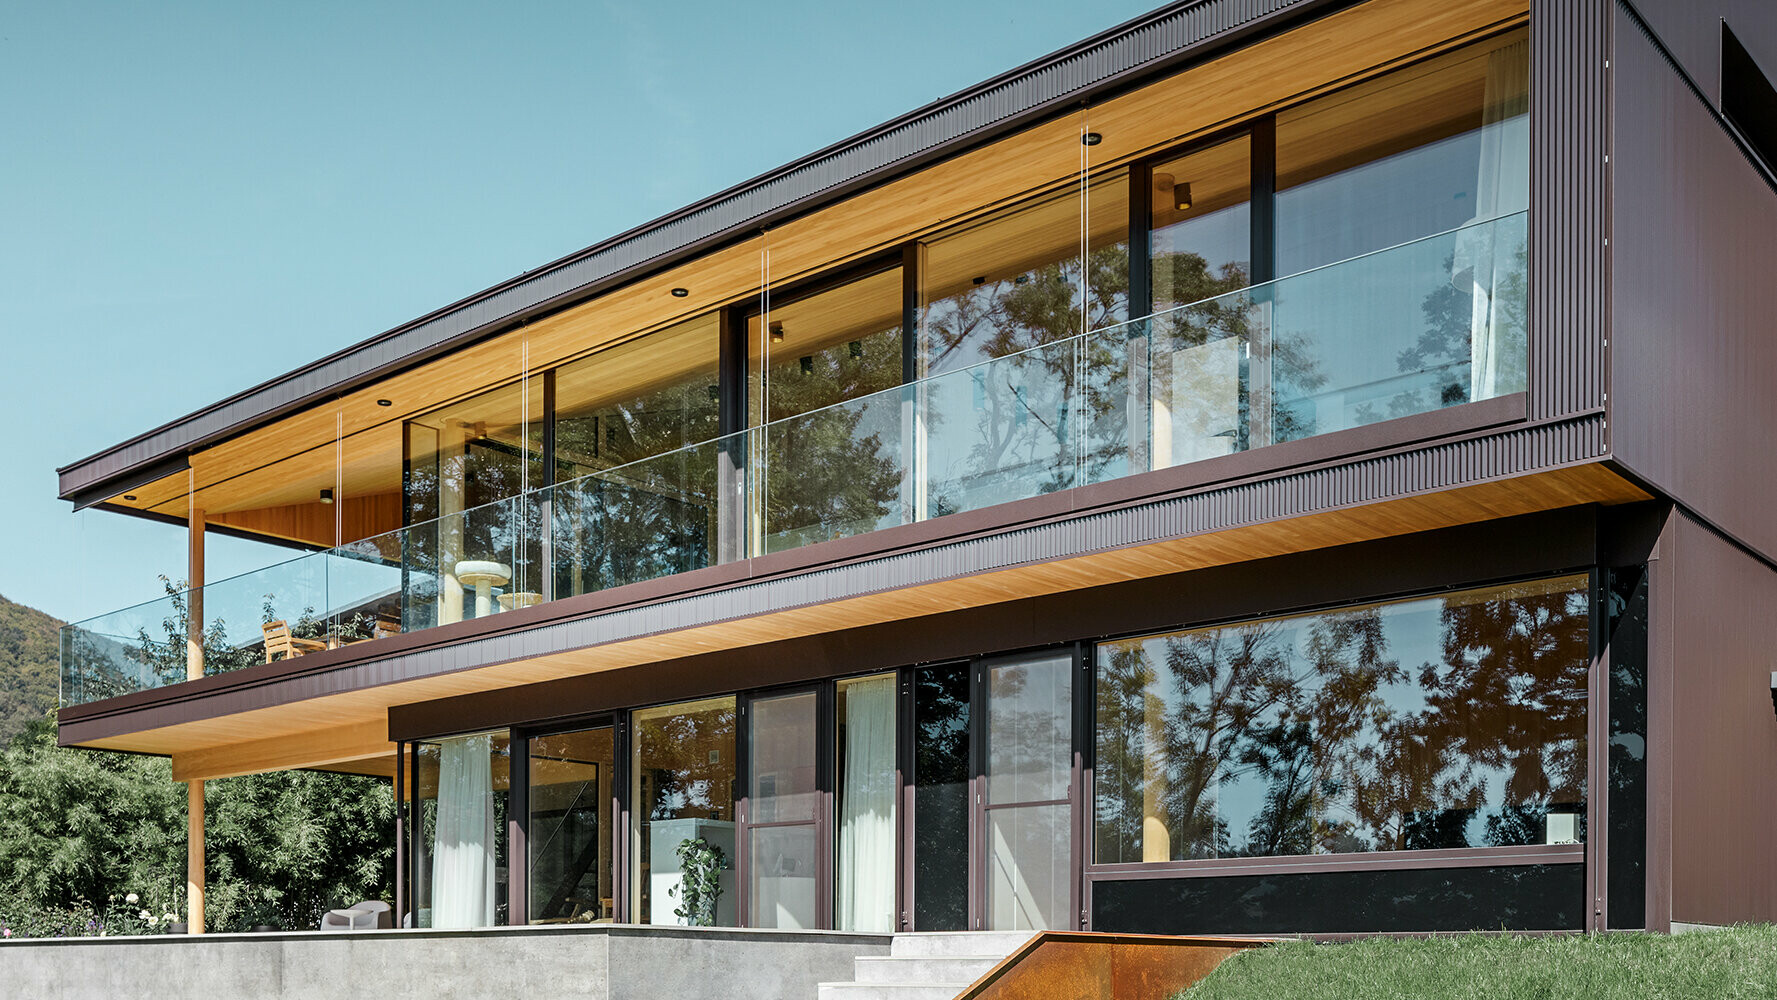 Construction neuve d'une maison individuelle avec une importante surface vitrée et une façade en aluminium dans la teinte brun